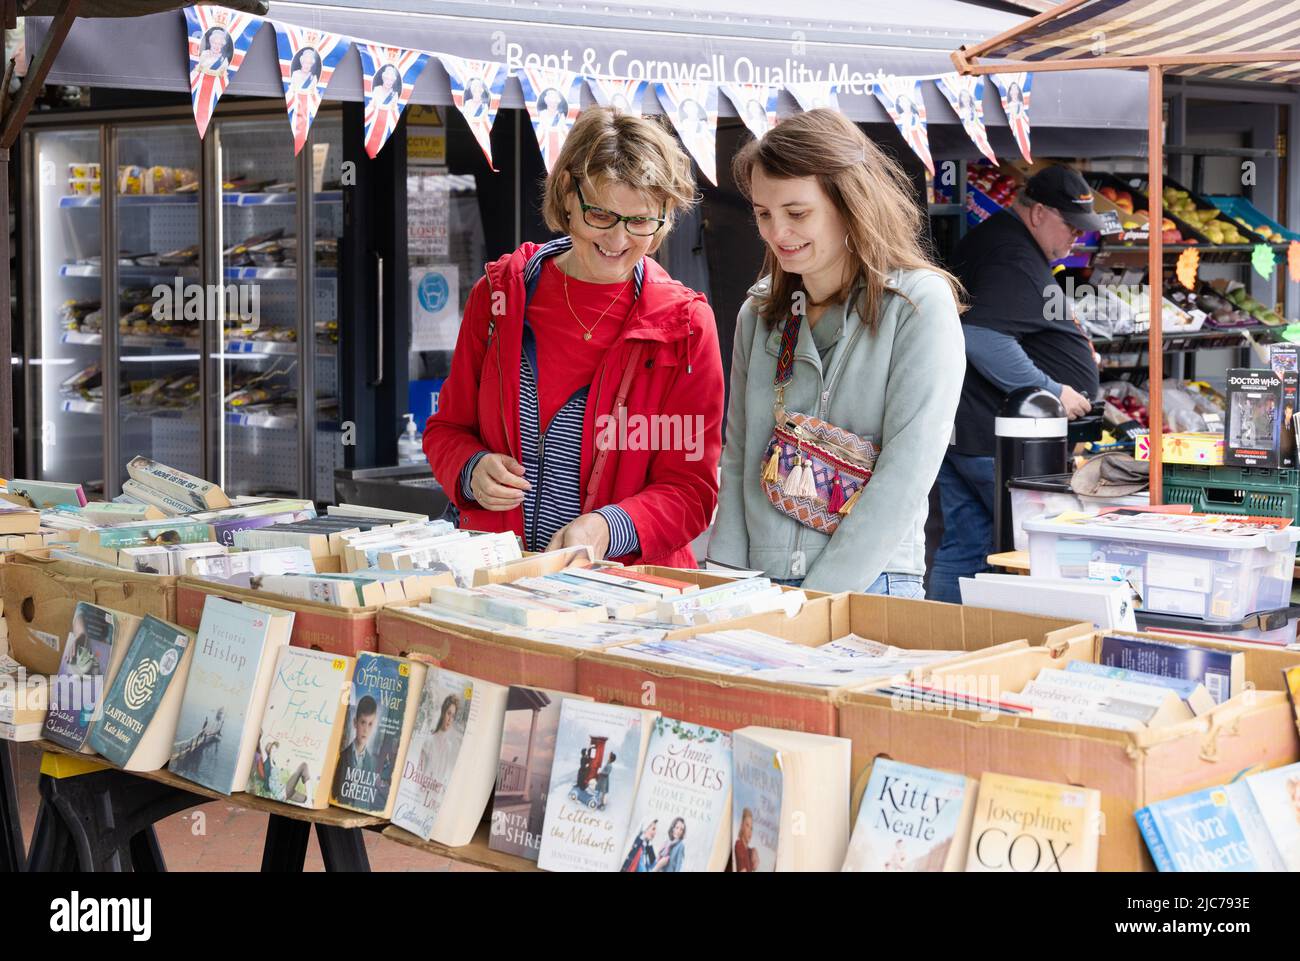 Market UK; Second hand book stall UK; two women shopping for second hand books at a market stall, Ely Market, Ely Cambridgeshire UK Stock Photo